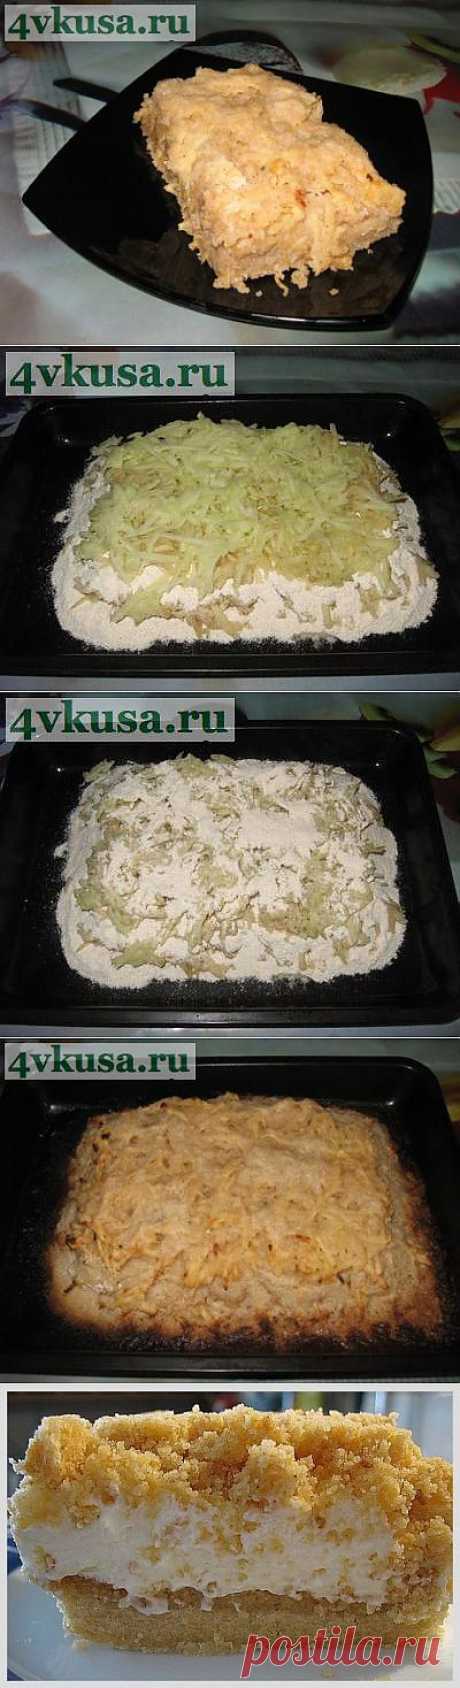 Яблочный пирог без яиц. Фоторецепт. | 4vkusa.ru